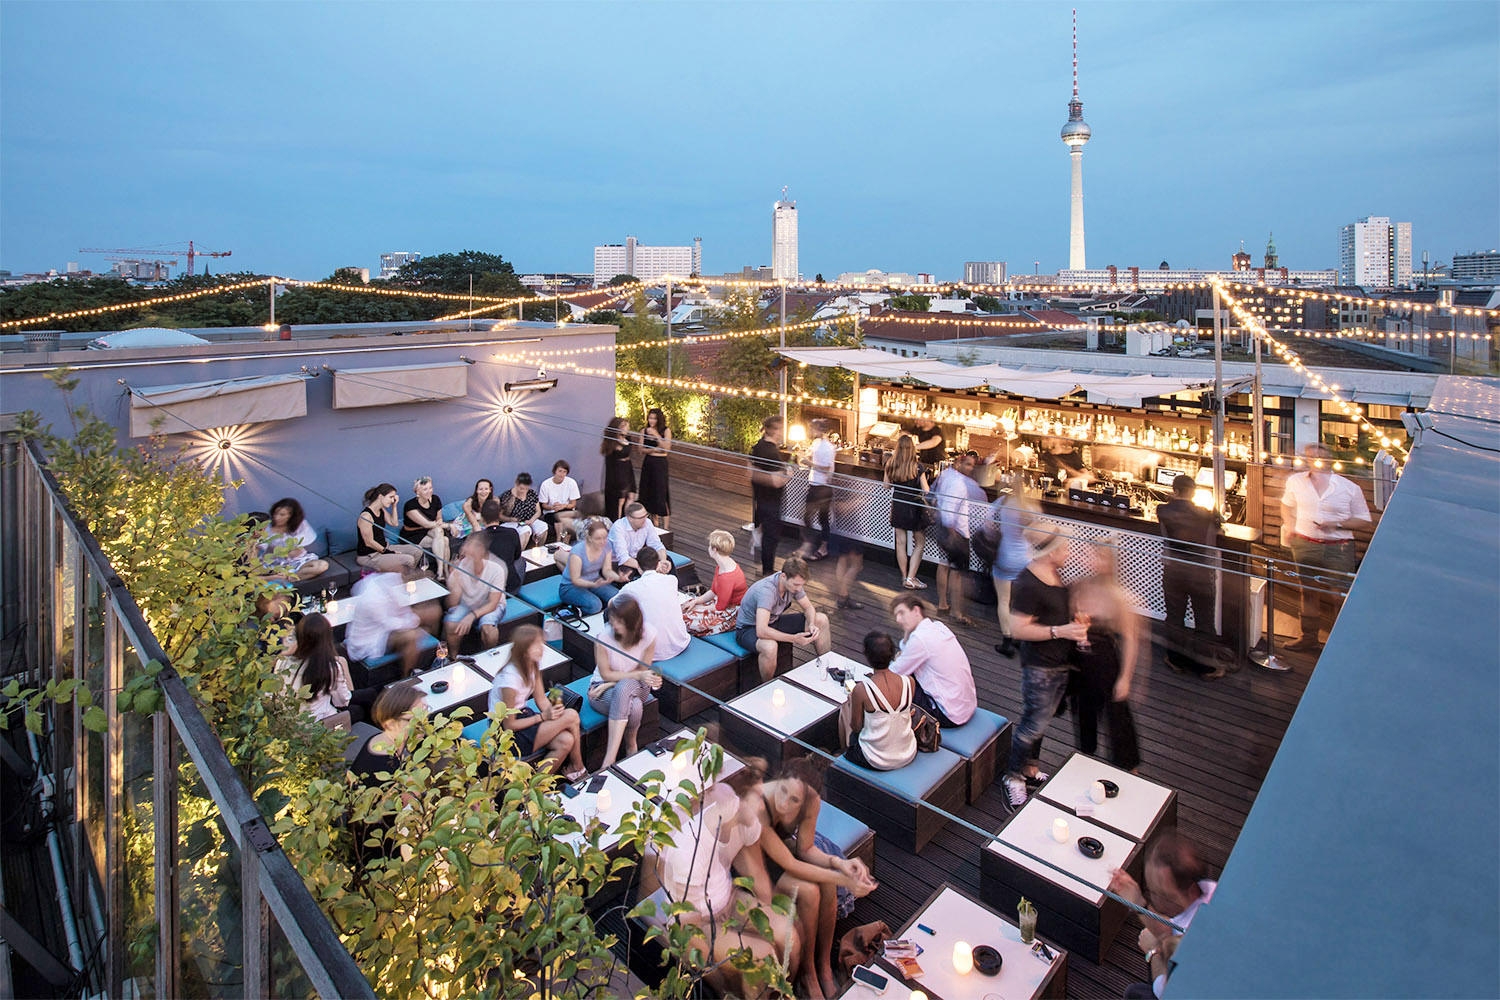 Rooftop-Bars in Berlin Die Rooftop-Bars des Amano Hotels stehen für viel Komfort und extravagant gute Drinks.